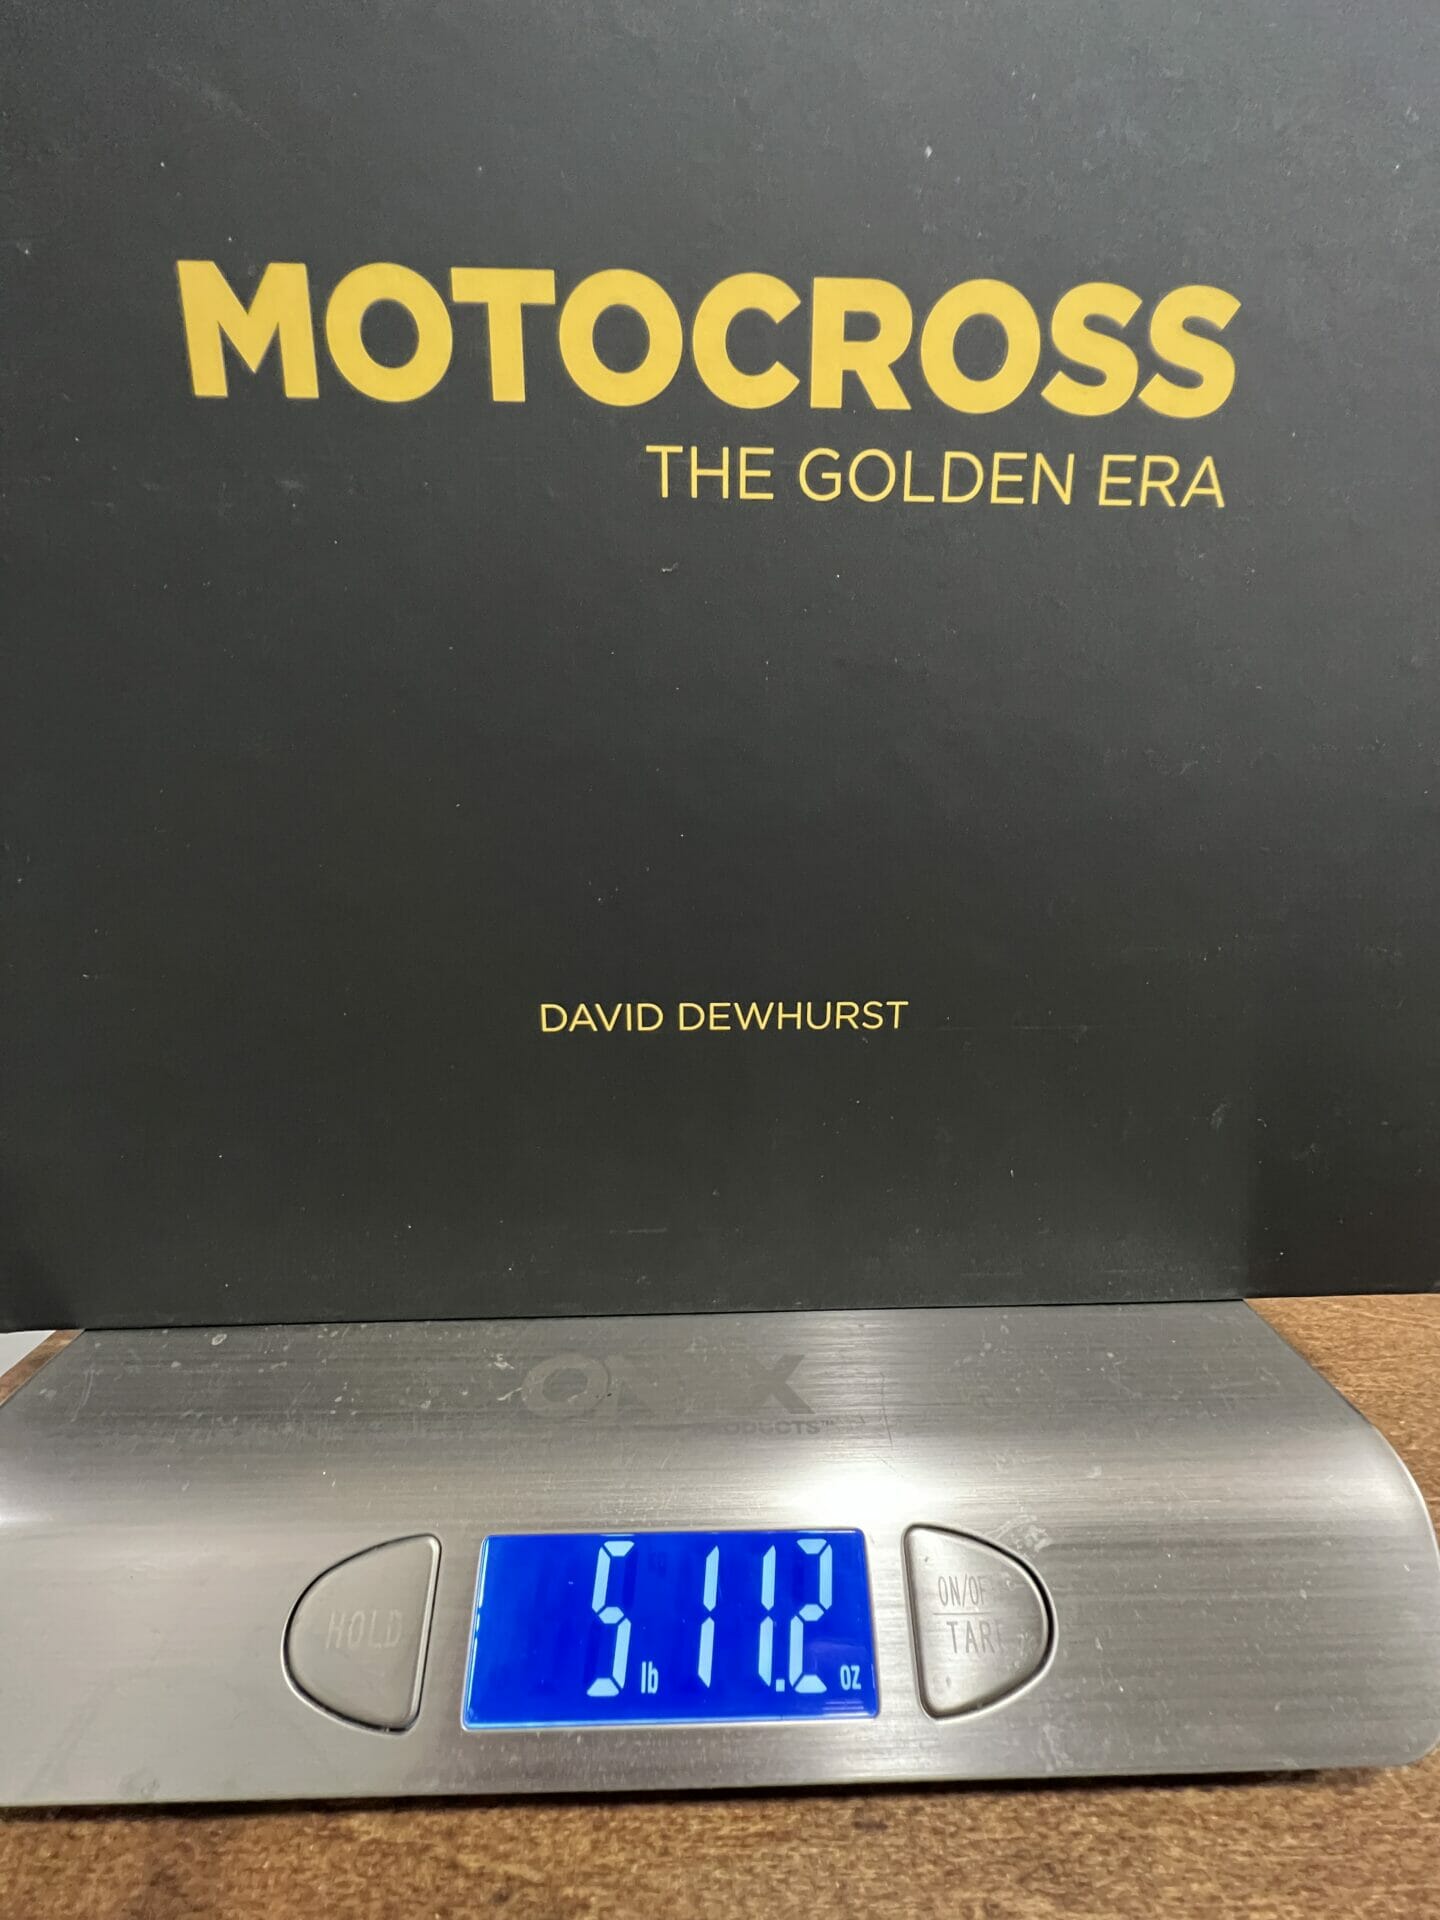 The Golden Era of Motocross